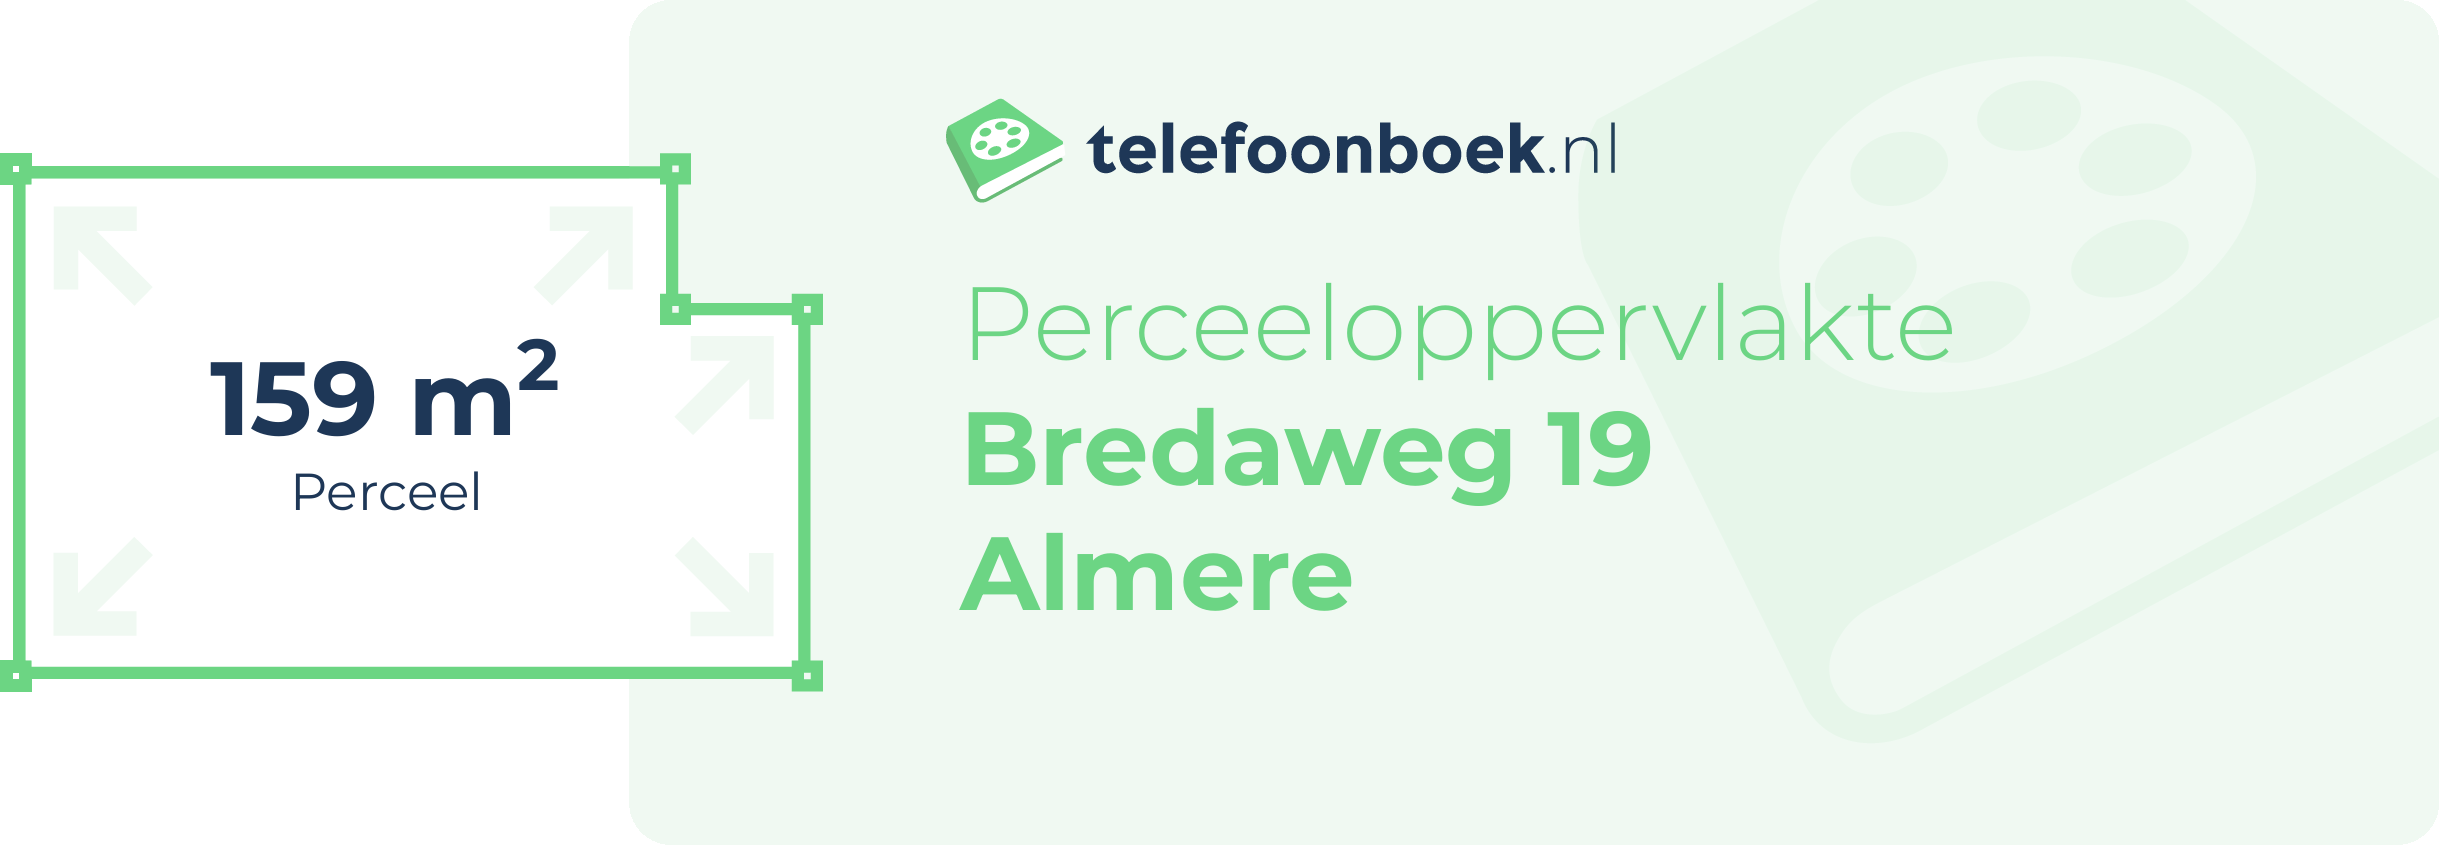 Perceeloppervlakte Bredaweg 19 Almere